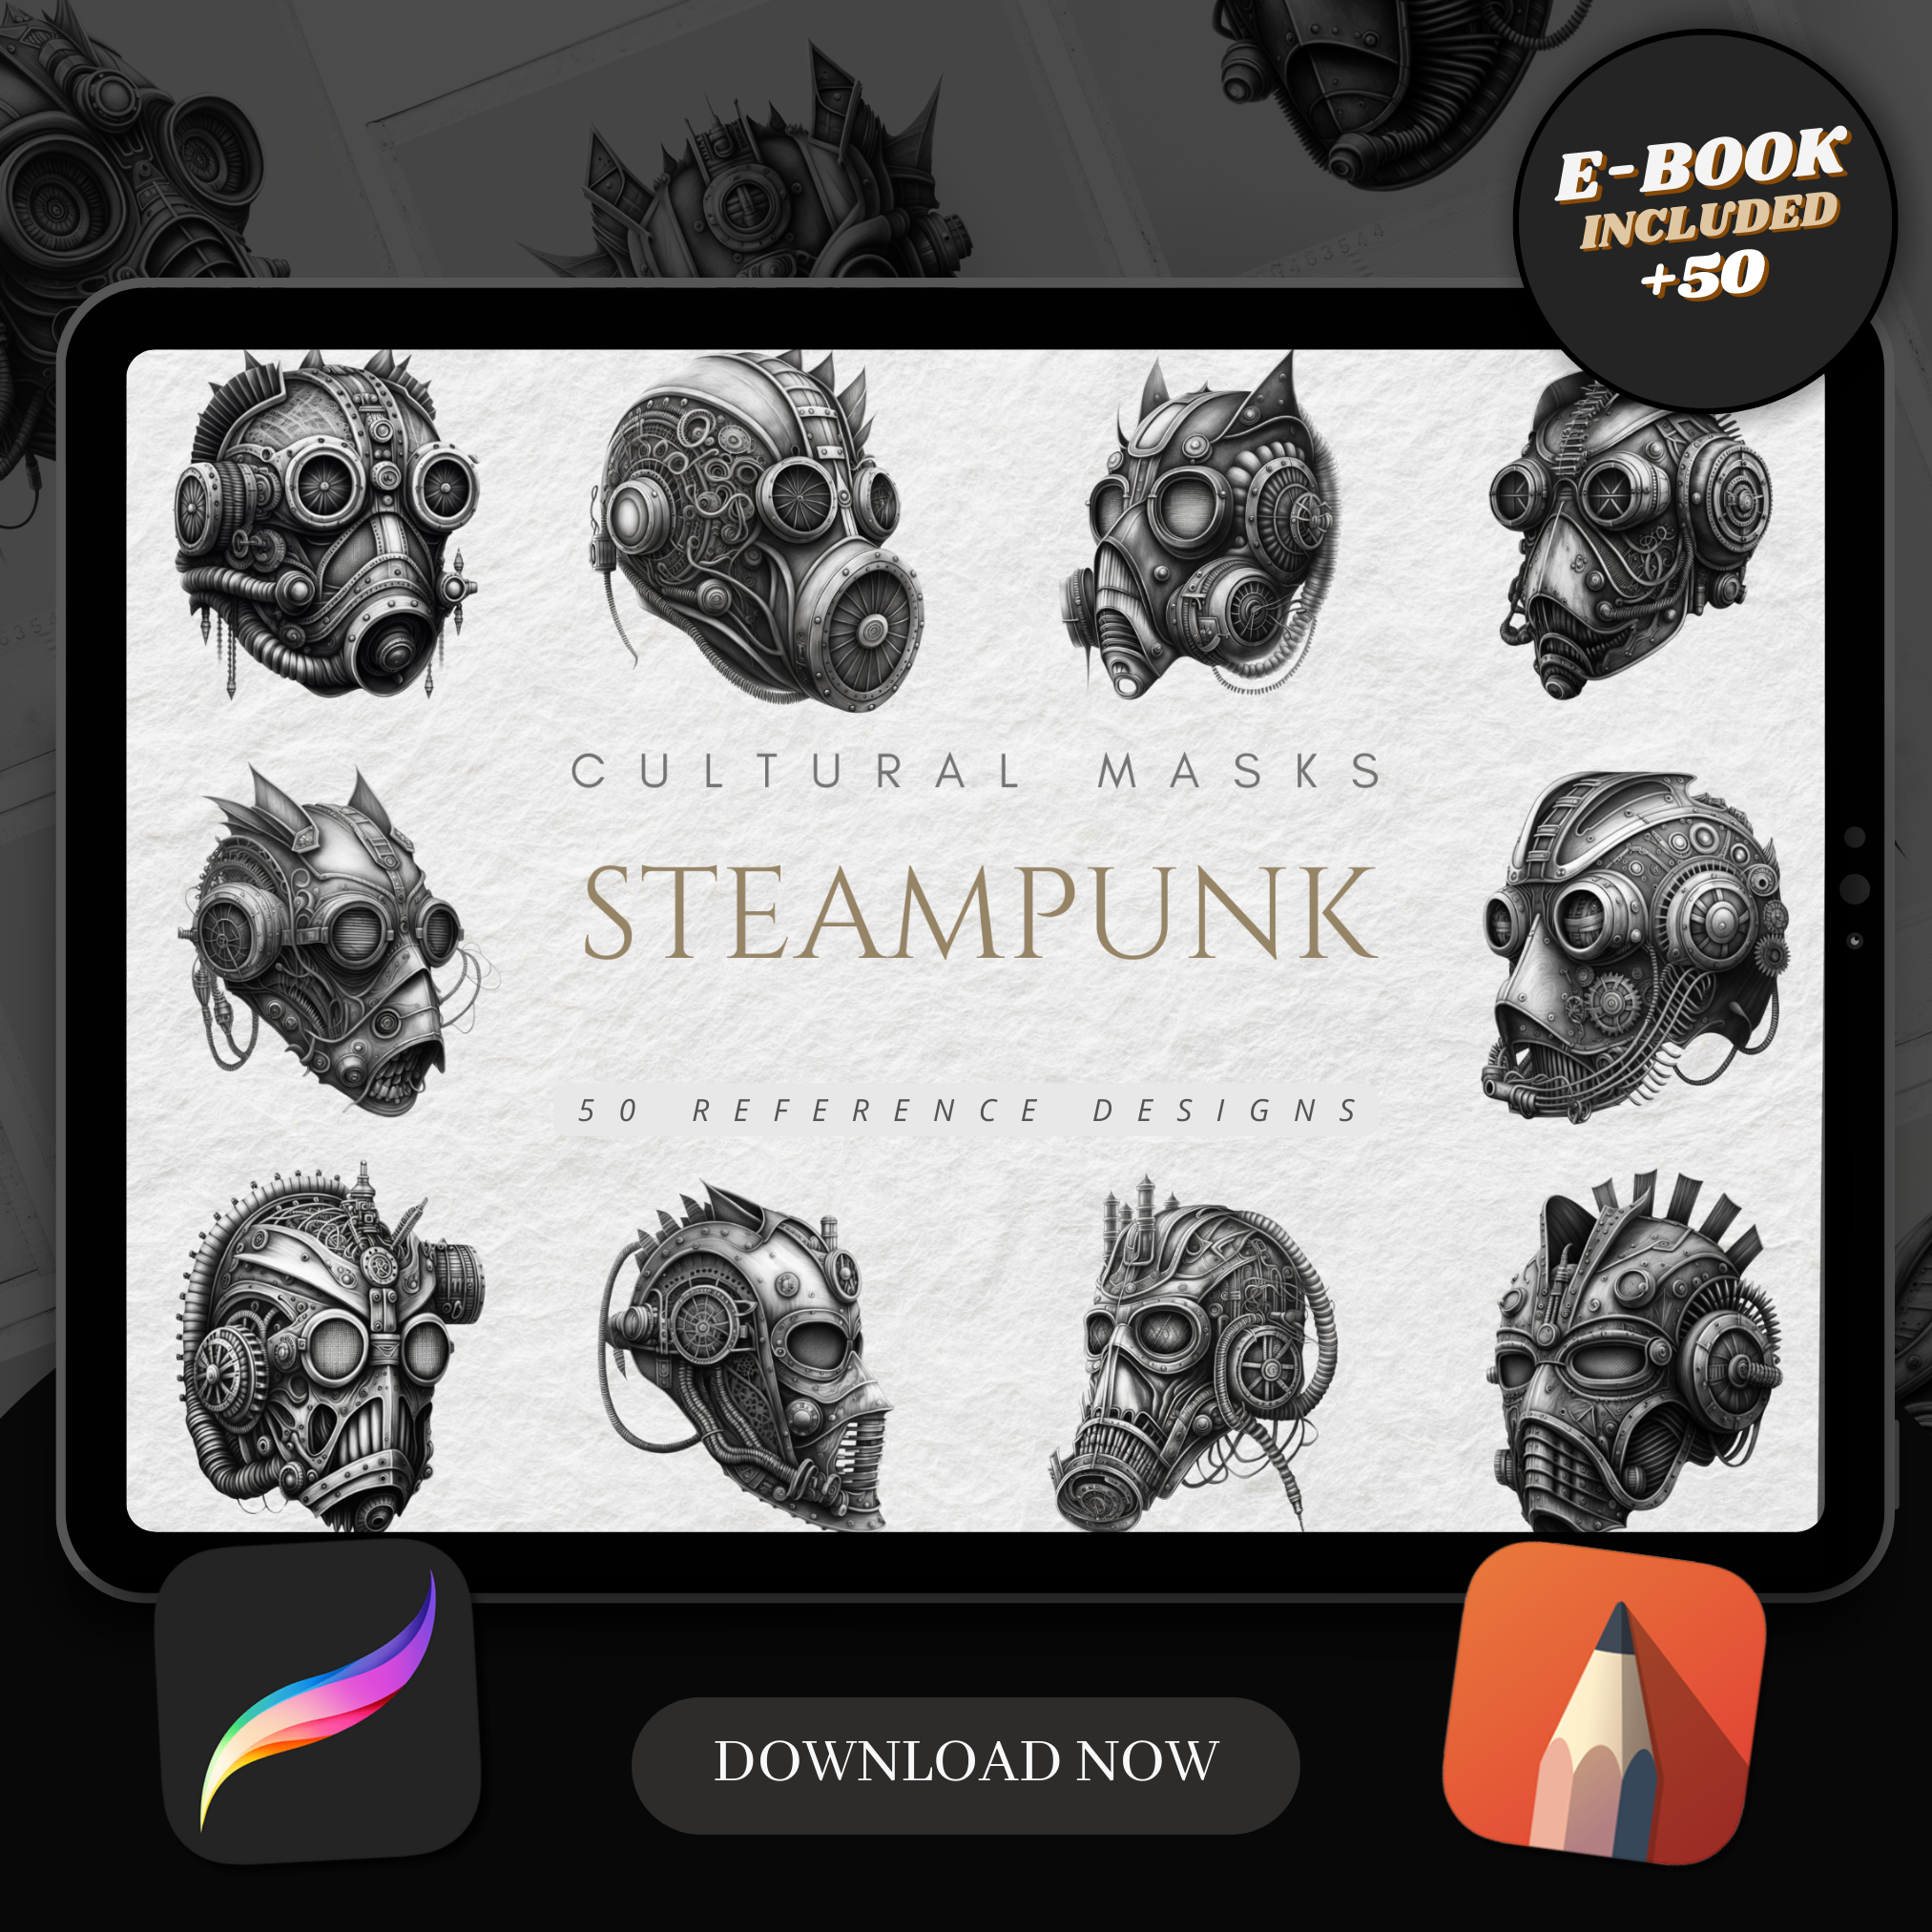 Steampunk Masks Digital Reference Design Collection: 50 Procreate & Sketchbook Images